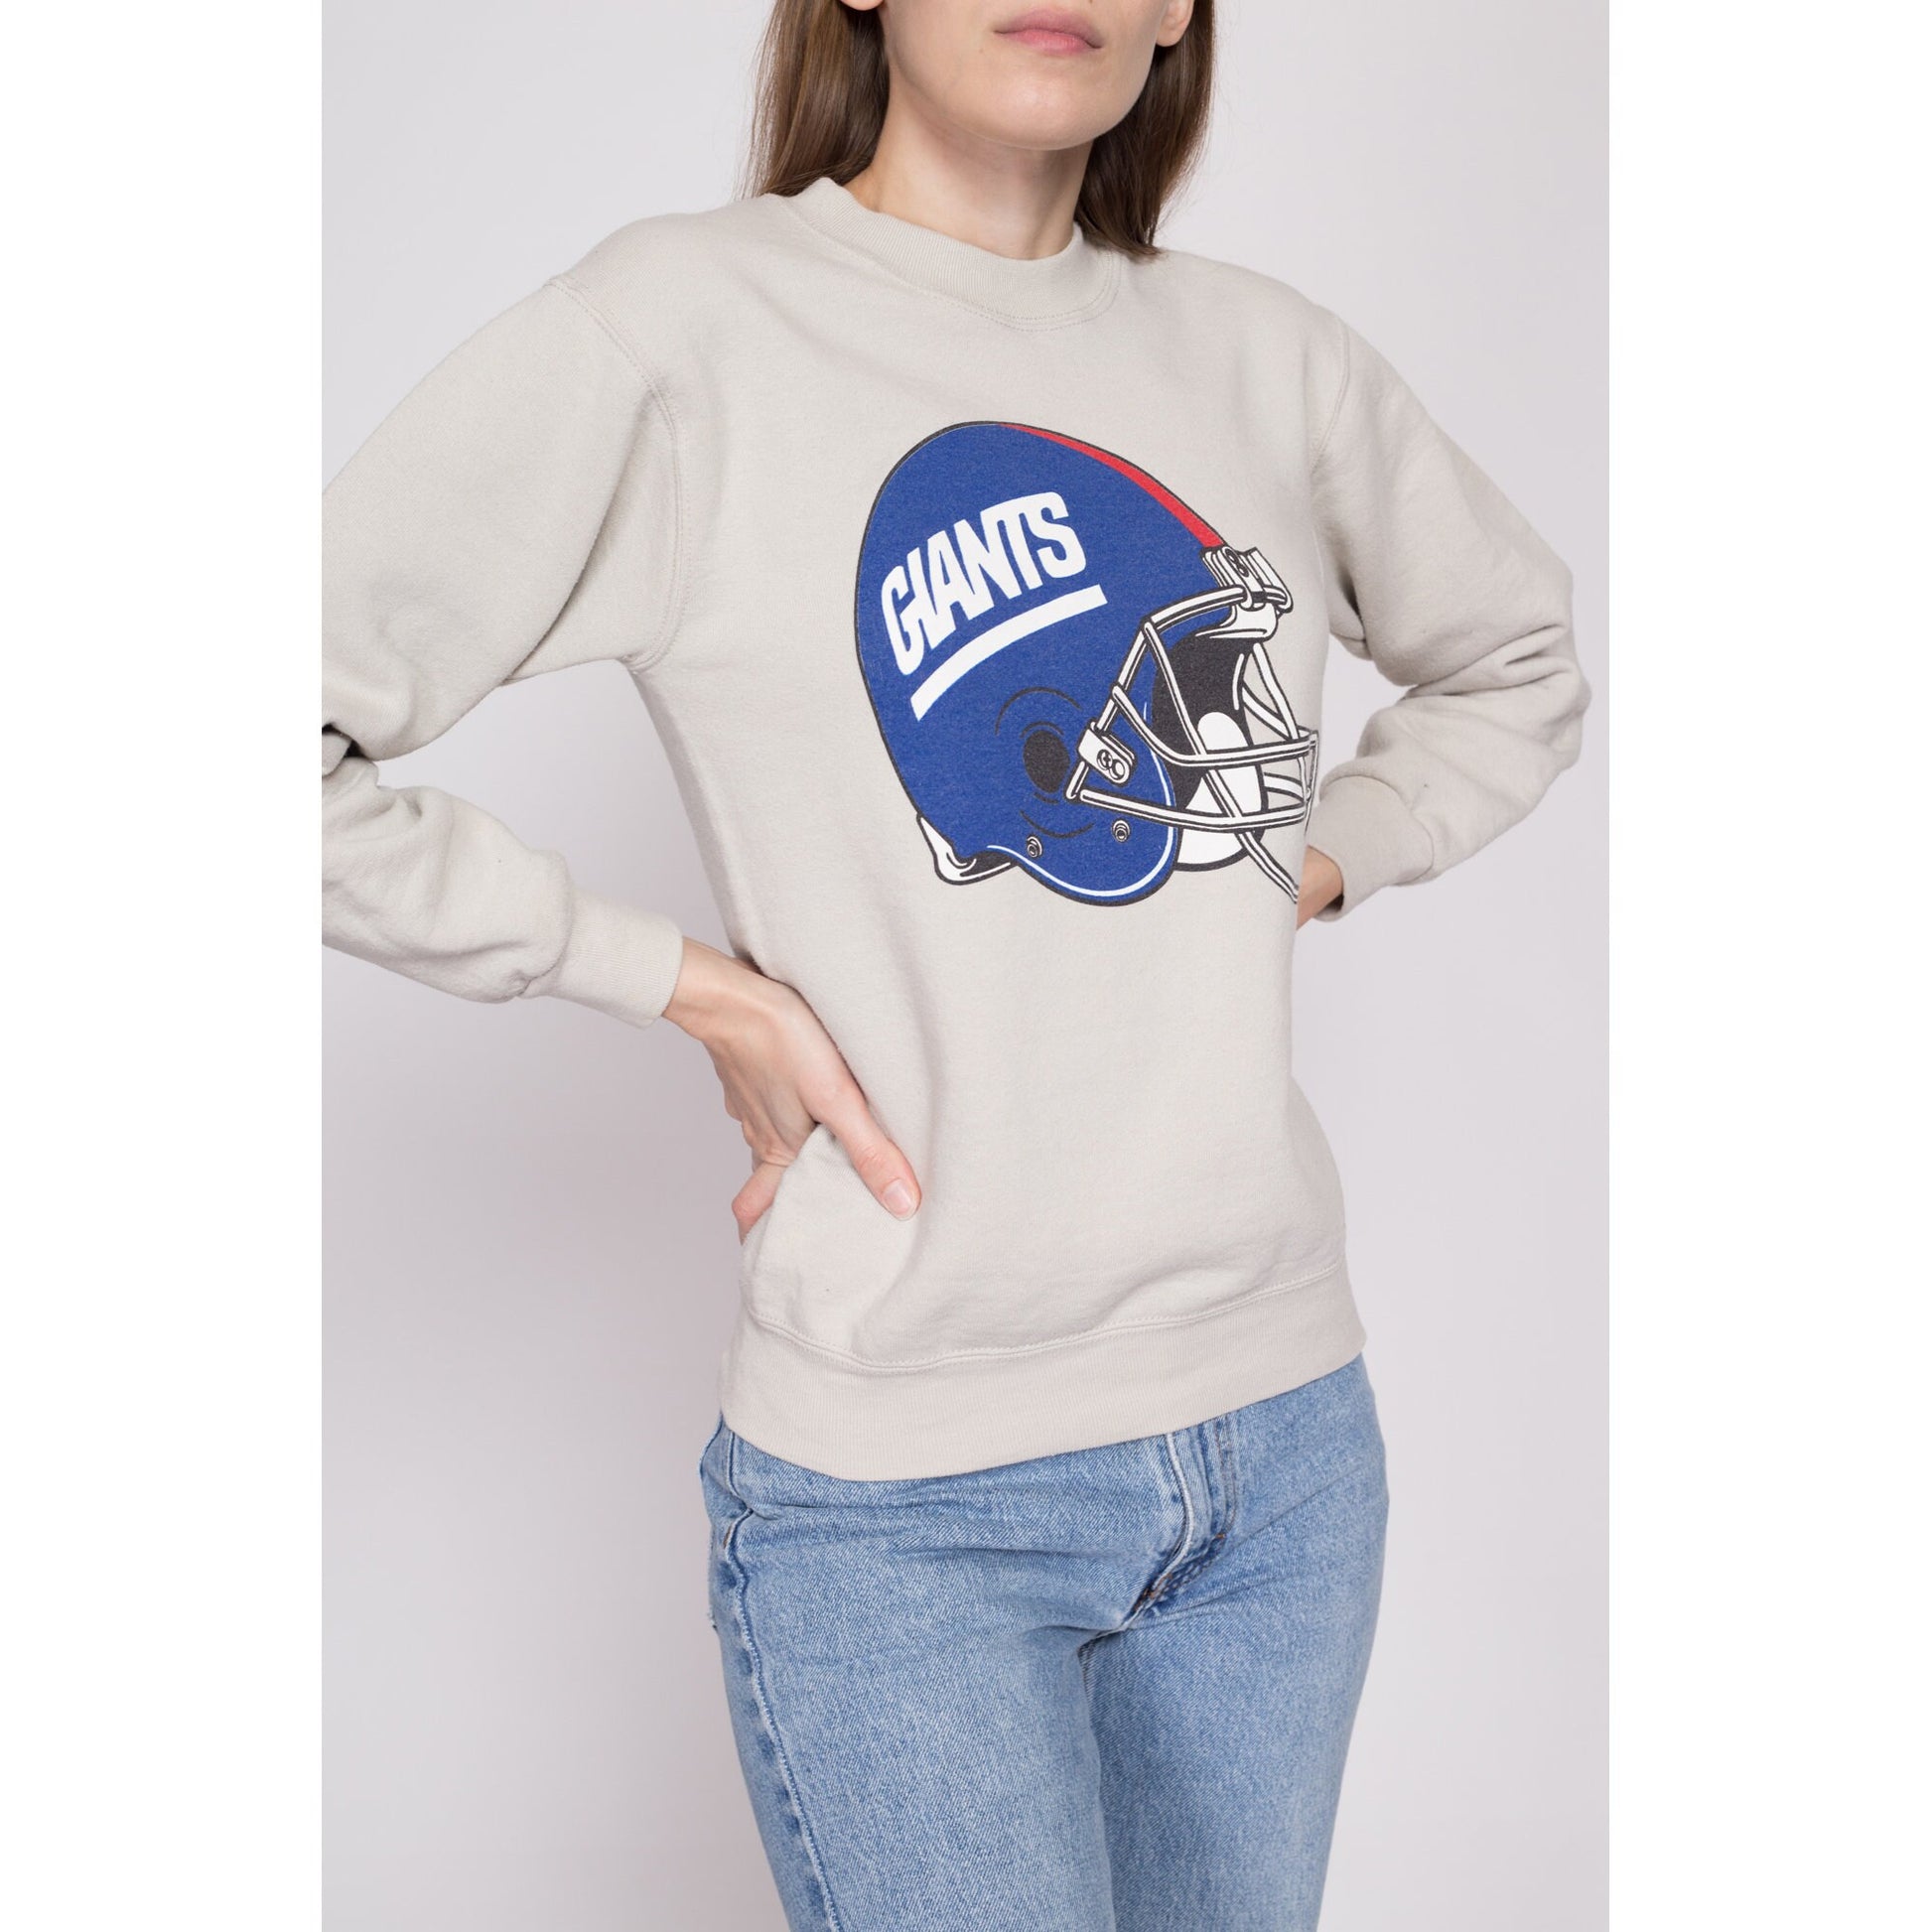 Proplayer 90s New York Giants Sweatshirt - Men's XS, Women's Small